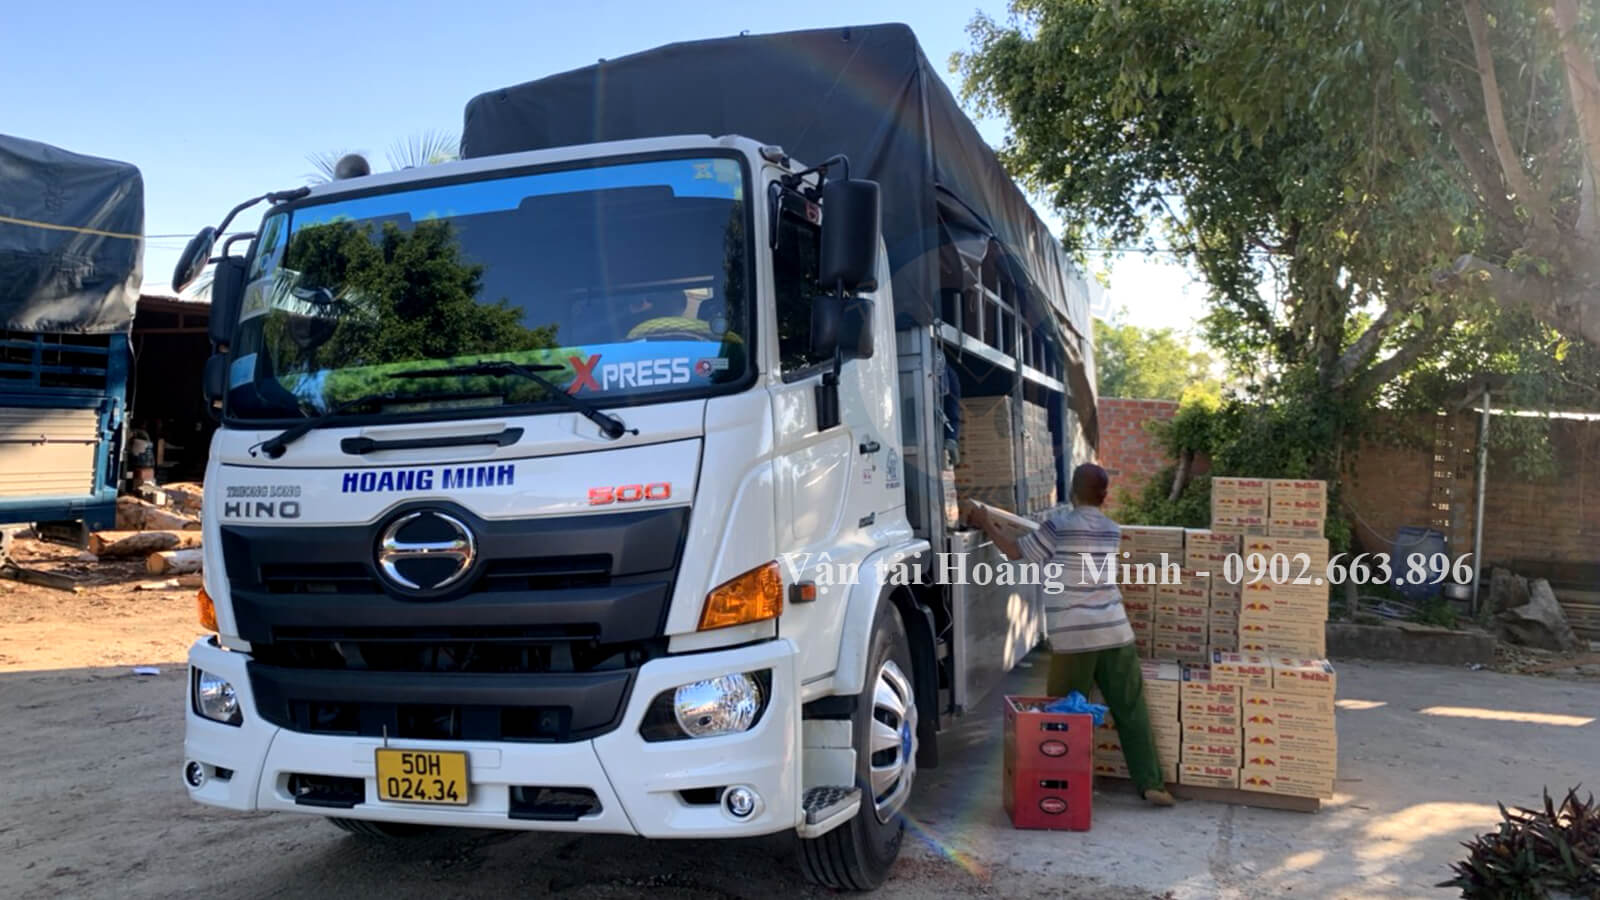 Hình ảnh xe tải Hoàng Minh chở hàng cho khách tại thủ Thừa.jpg